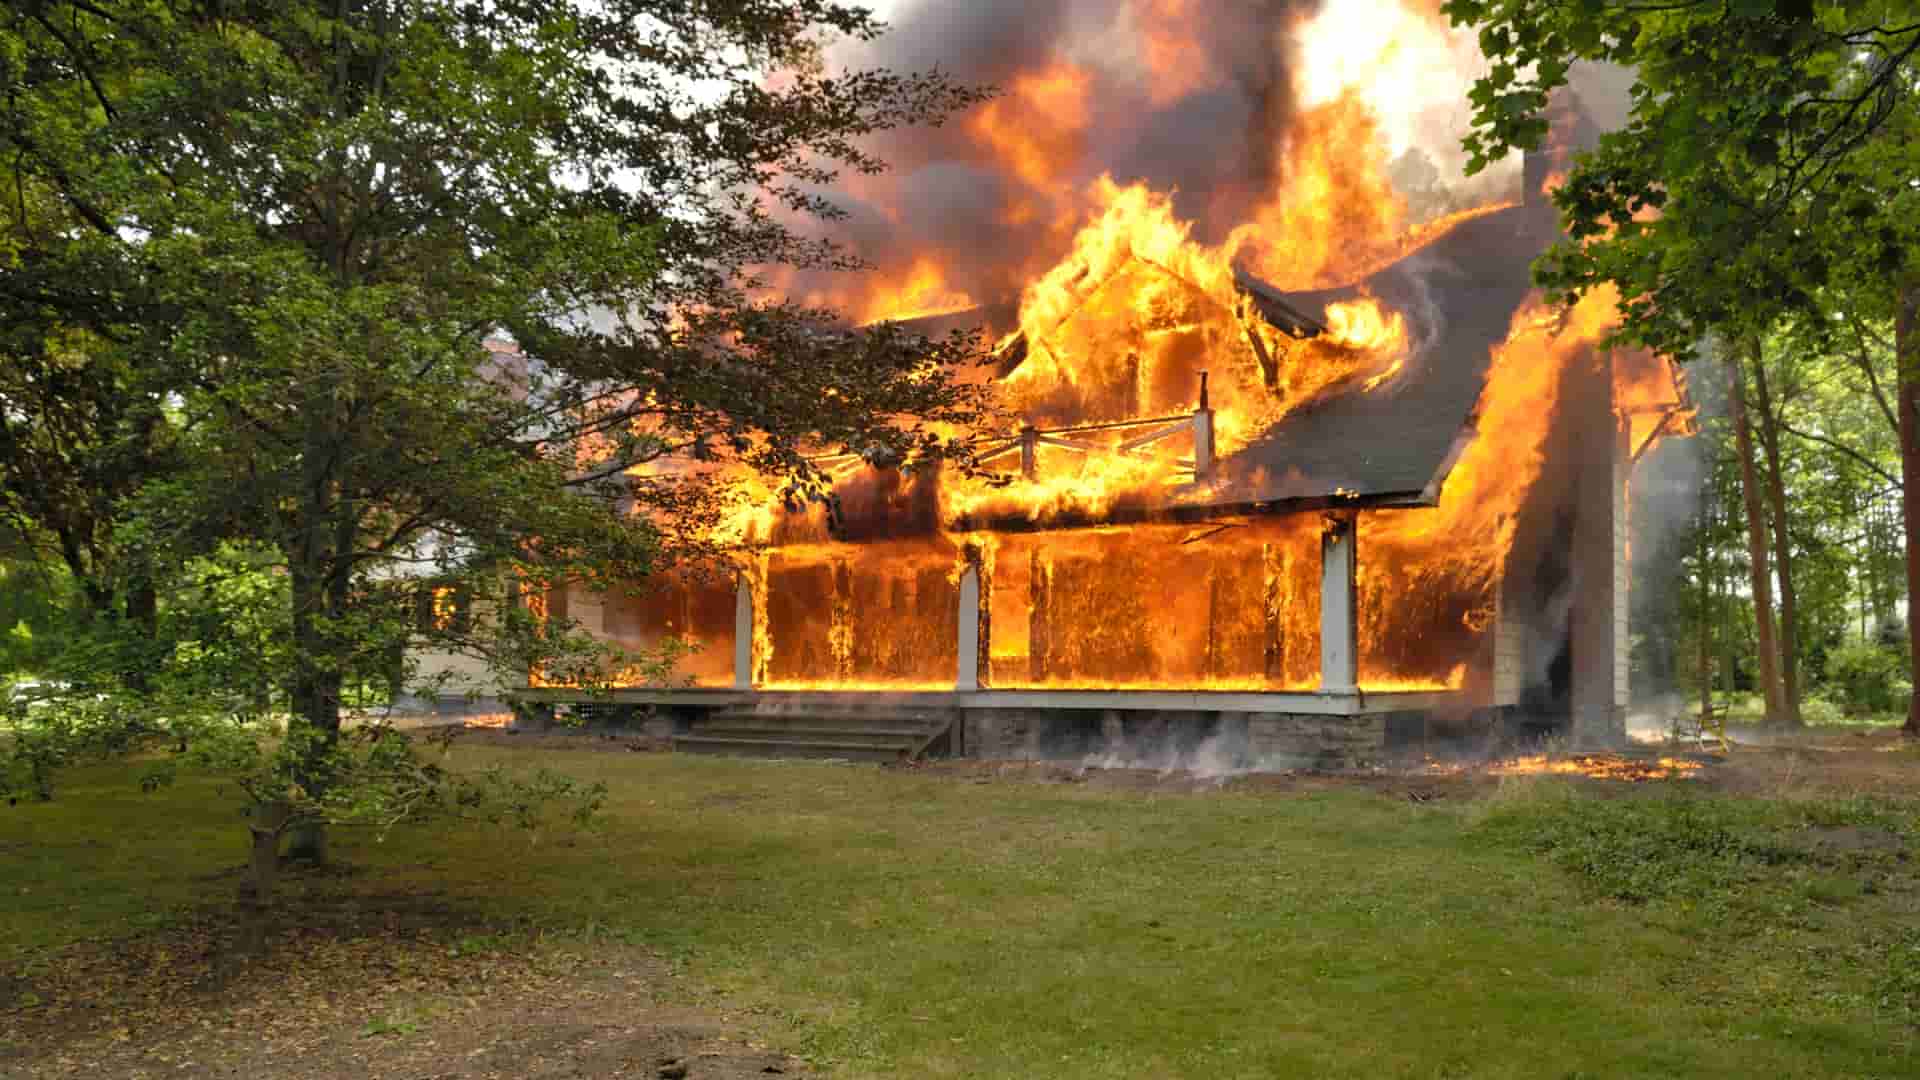 מהן 7 הסיבות הנפוצות לפריצת שריפות בבתים, וכיצד למנוע אותן?